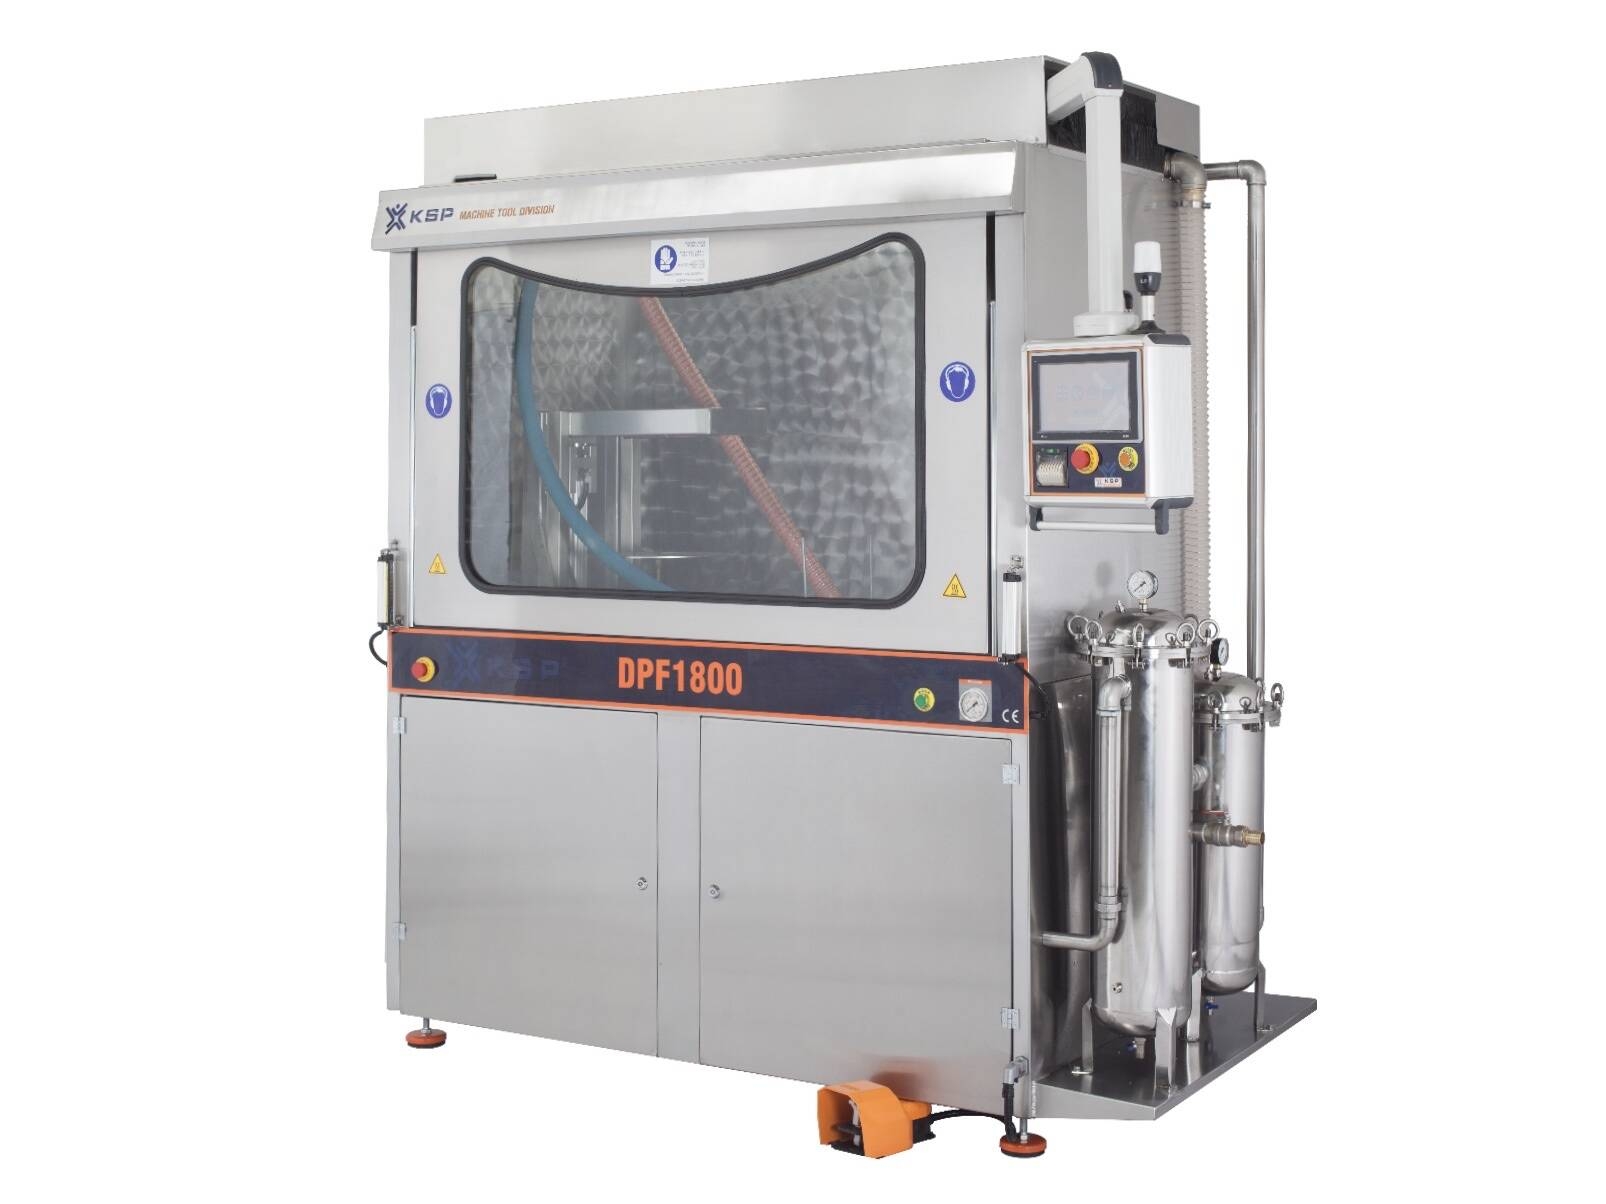 Hochdruckwaschmaschinenprogramm lava FAP und katalysatoren mit integriertem trocknungssystem. Mehr optionen für alle bedürfnisse und anwendungen verfügbar